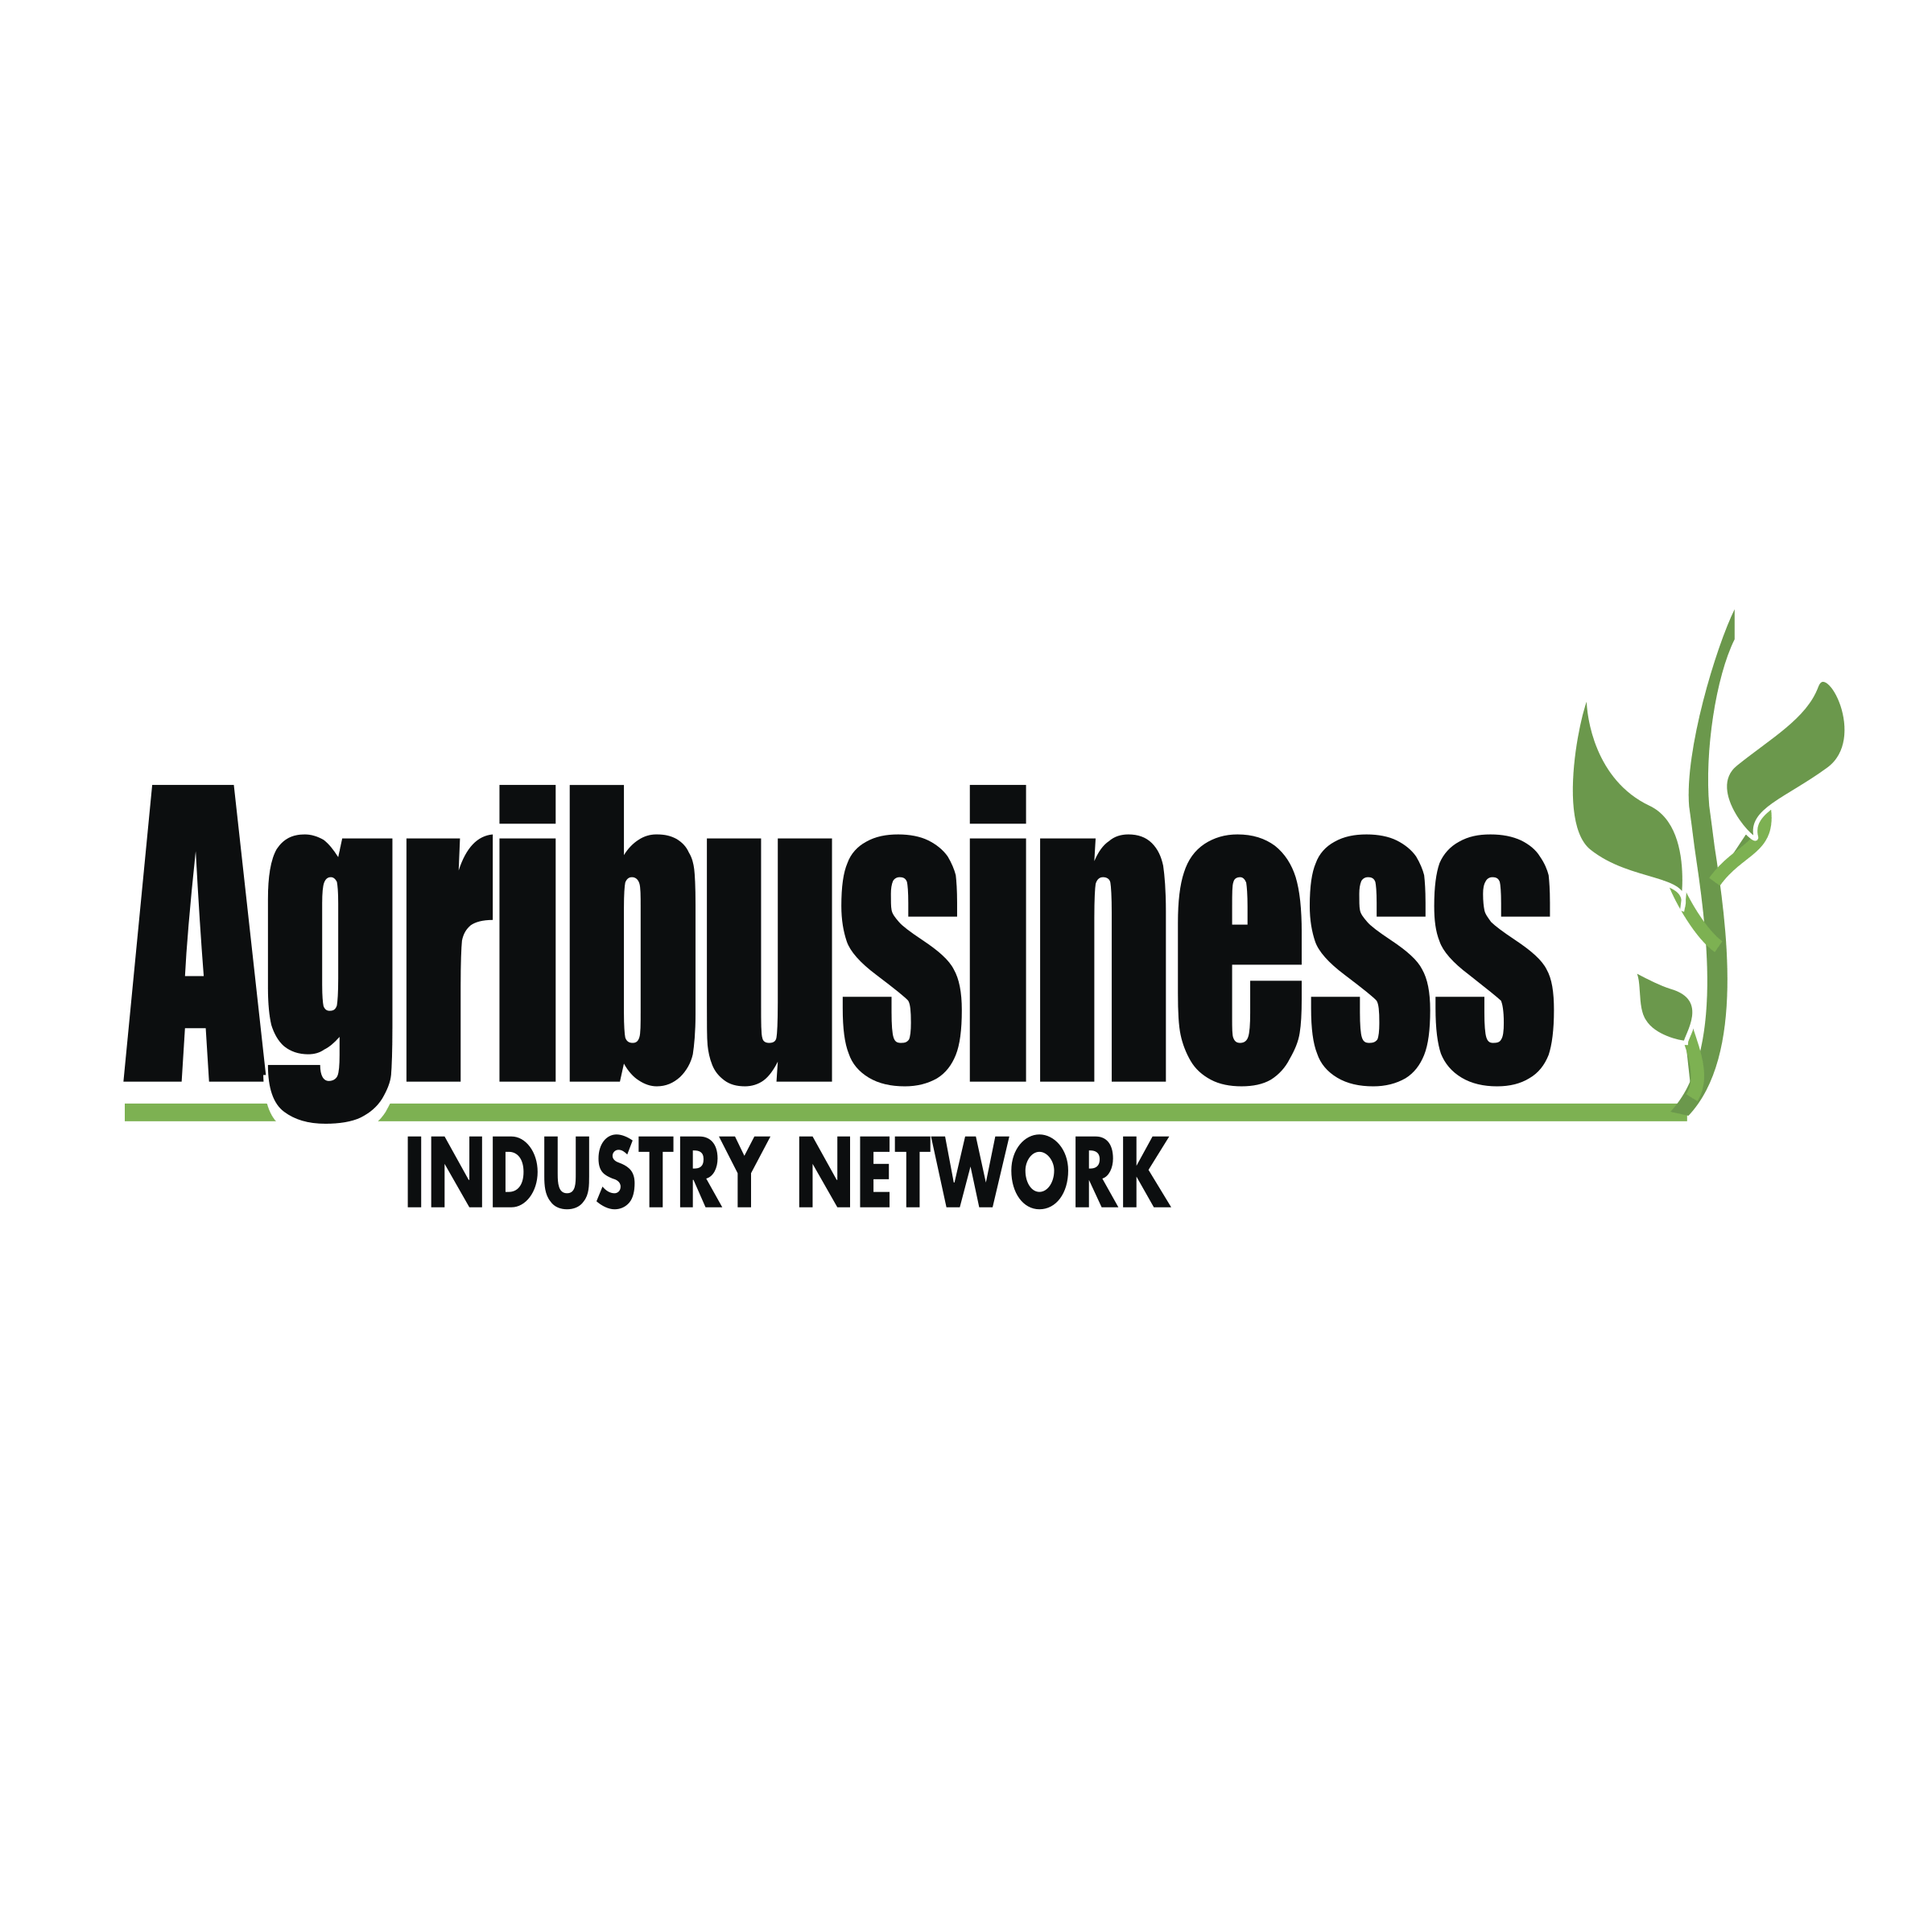 Agribusiness Logo - Agribusiness Industry Network Logo PNG Transparent & SVG Vector ...